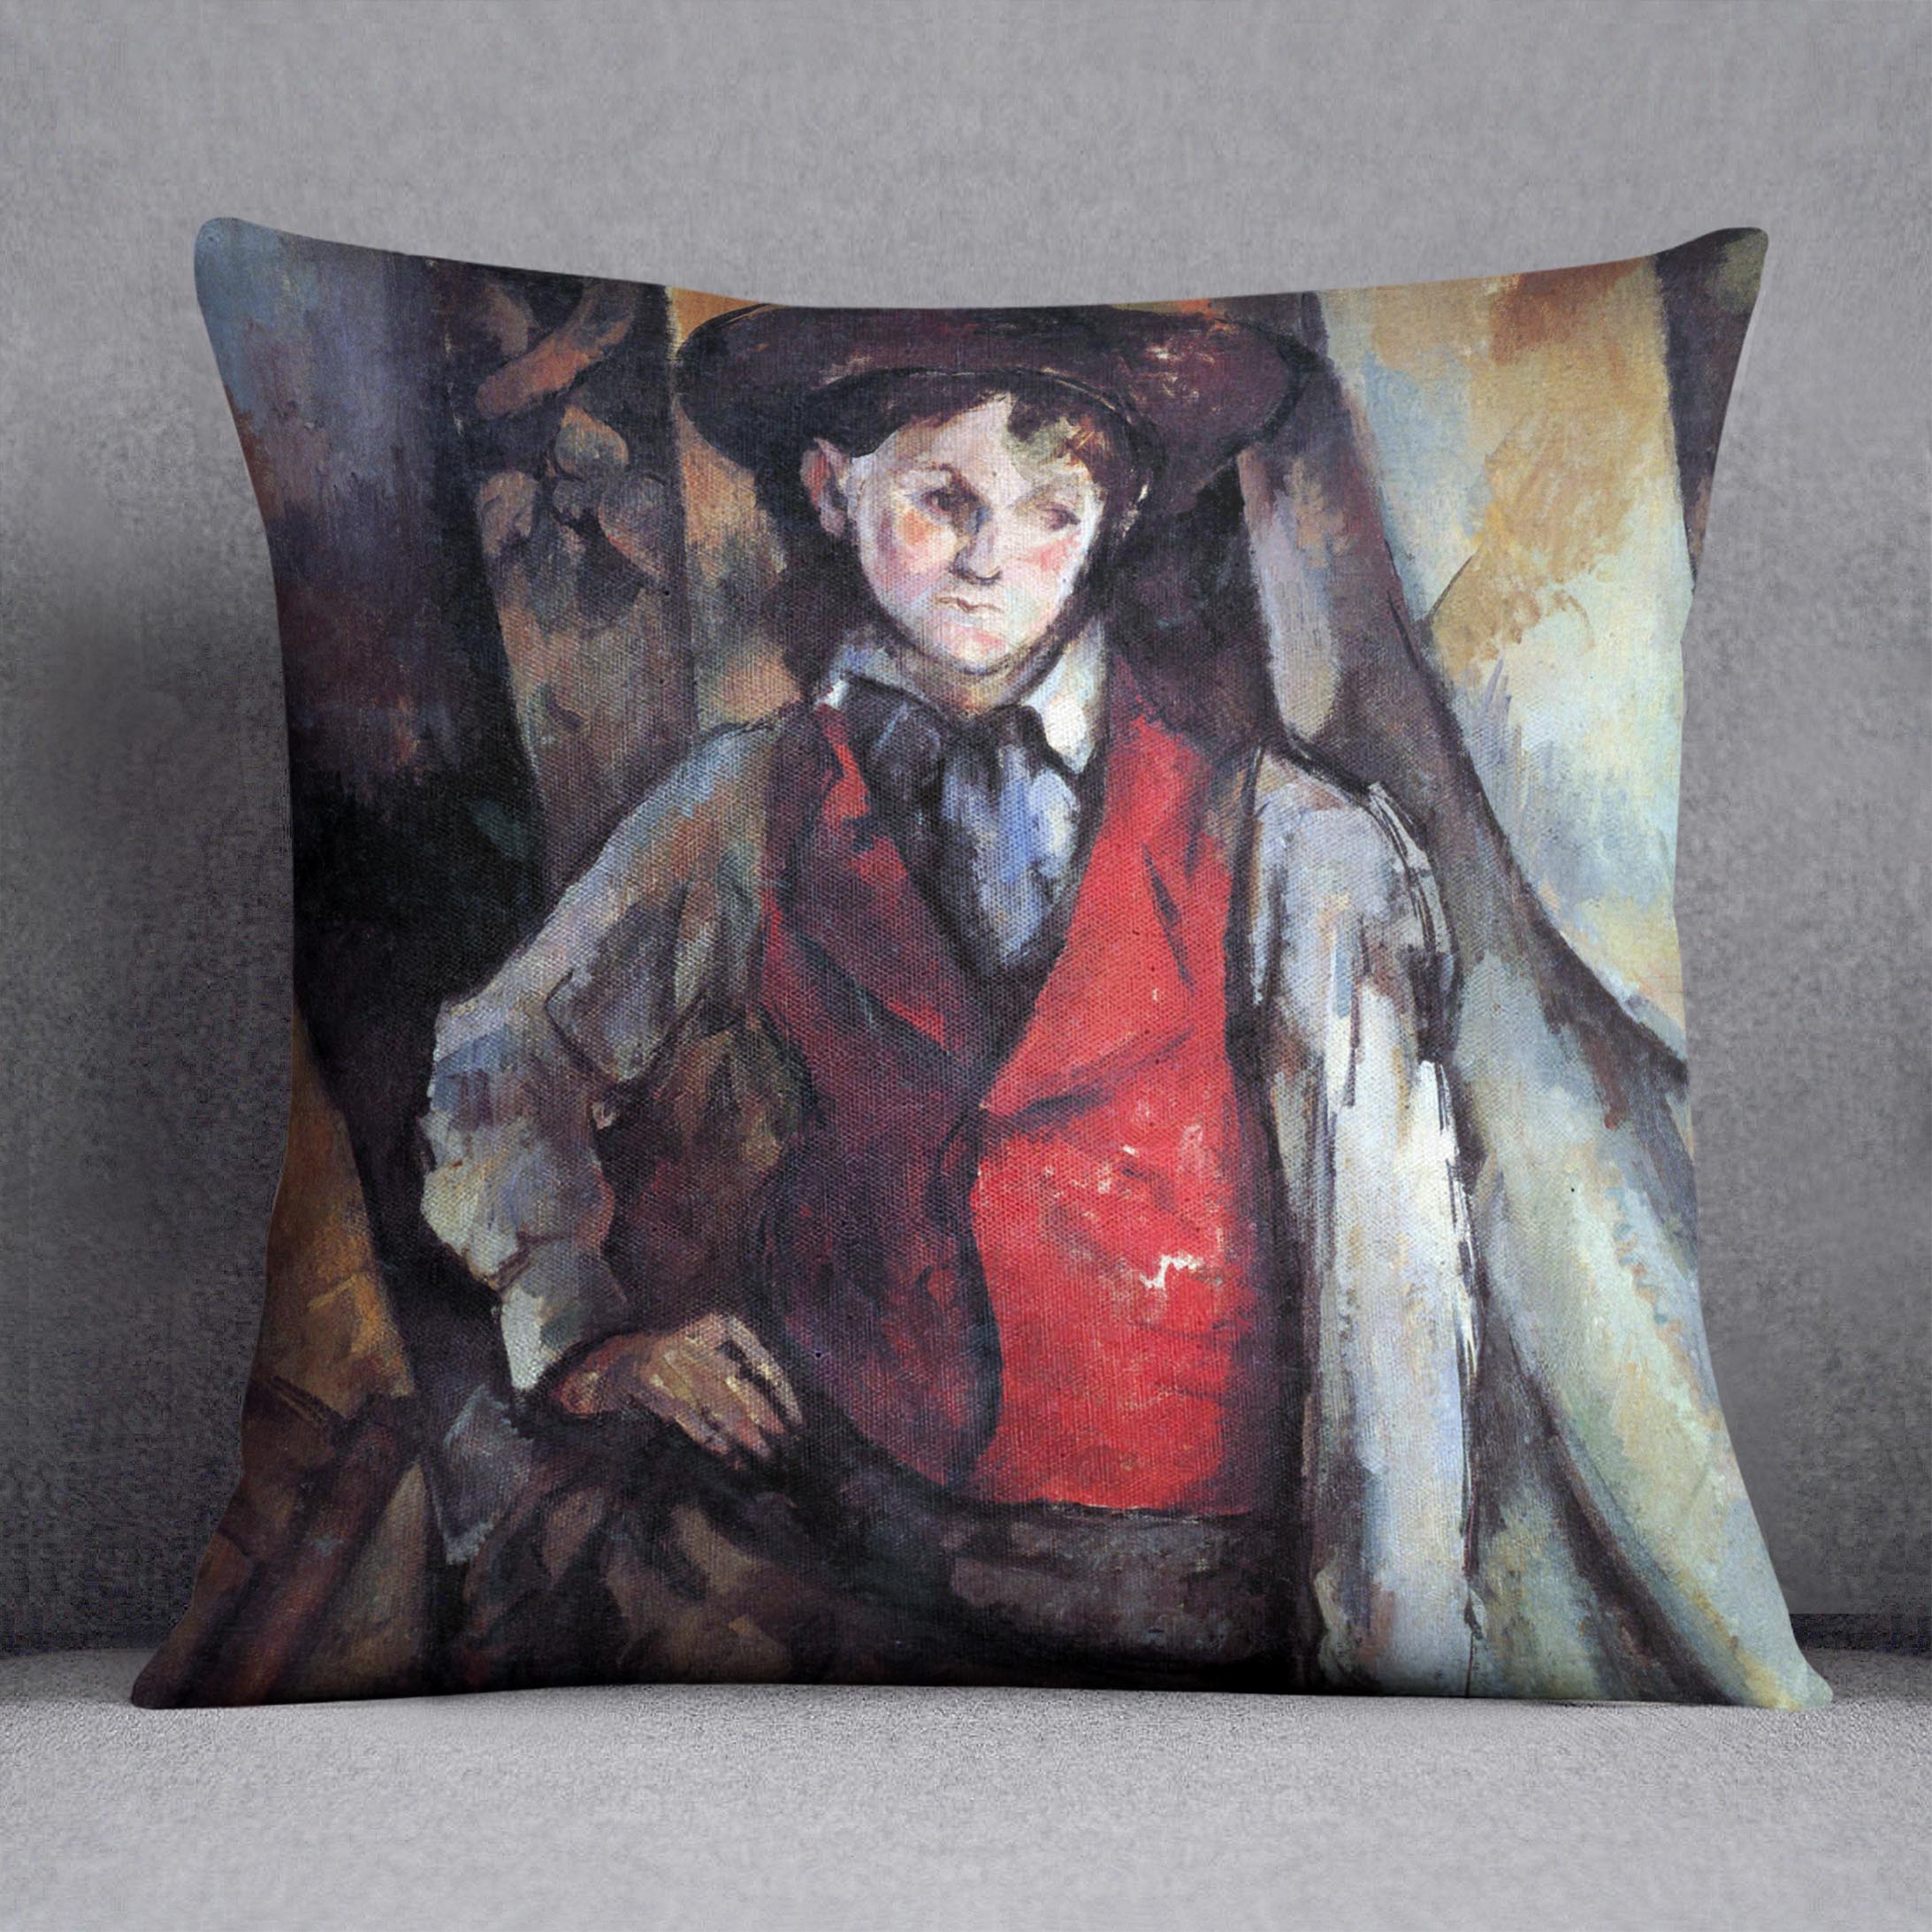 Boy in Red Waistcoat by Cezanne Cushion - Canvas Art Rocks - 1